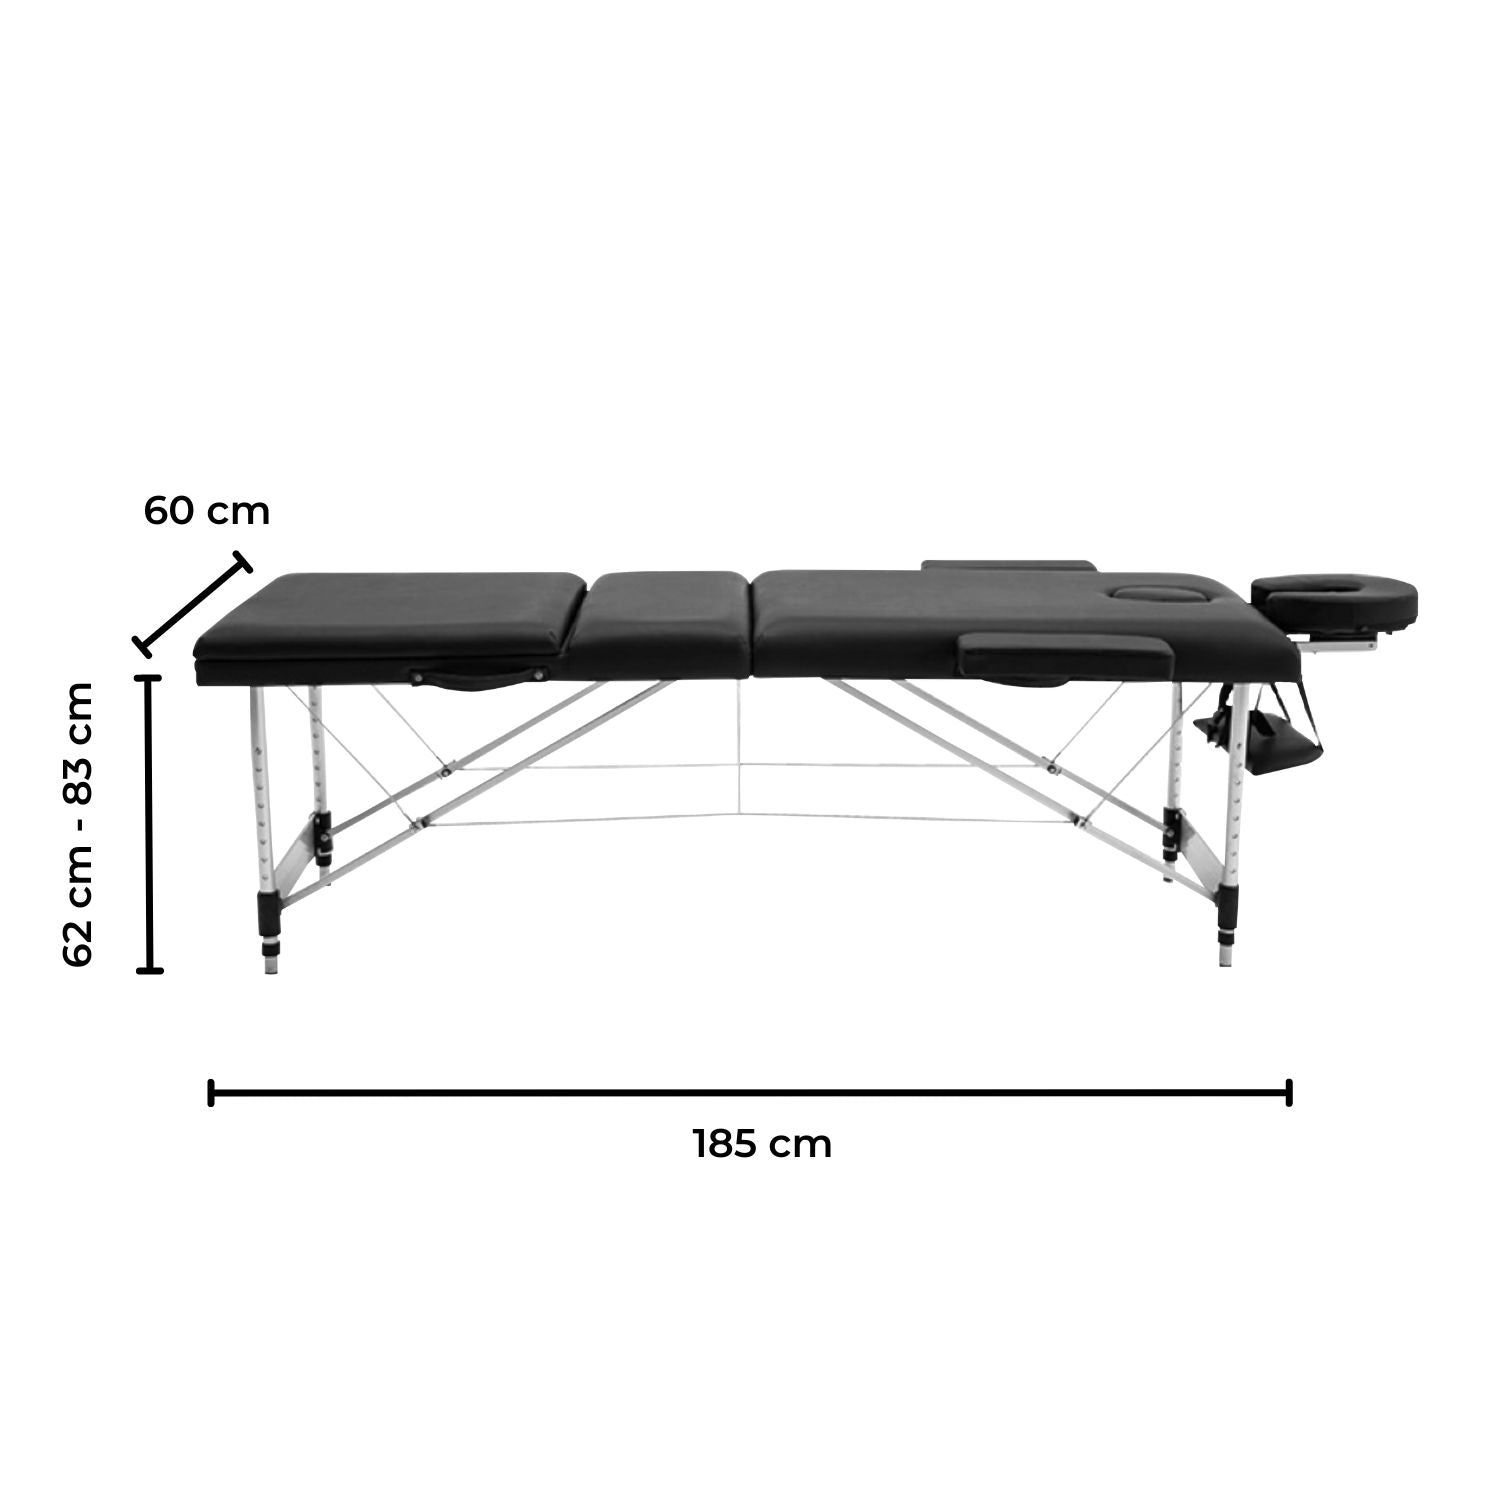 ONIREST 3 Fold Adjustable Portable Massage Bed (Black)